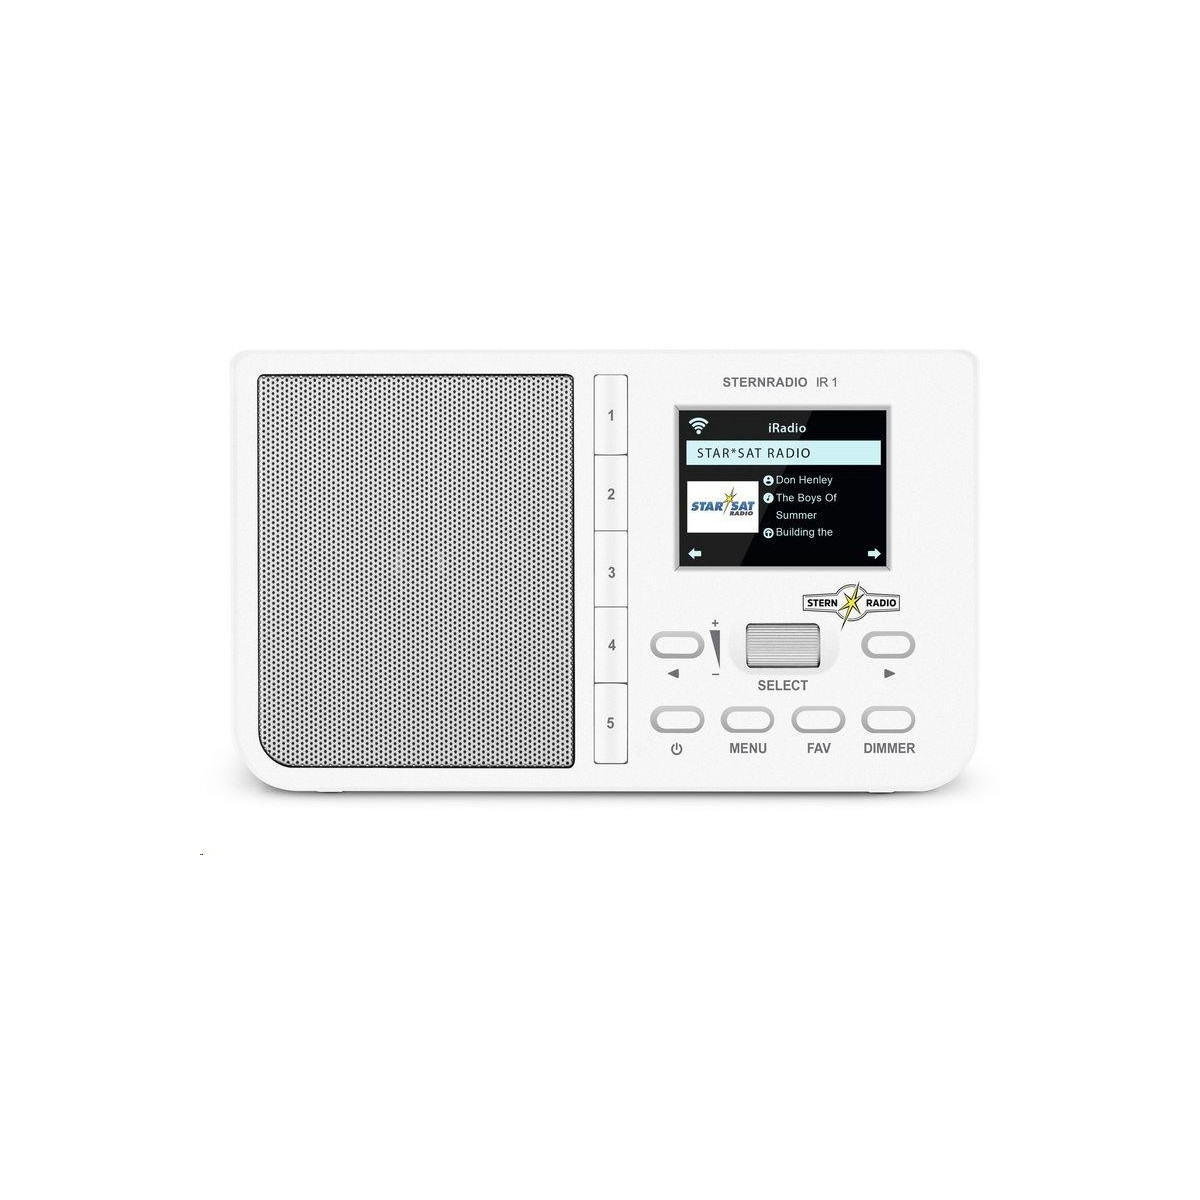 TechniSat STERNRADIO IR 1 Bílé - Kvalitní Rádio pro Každého - Nejlepší nabídka na trhu